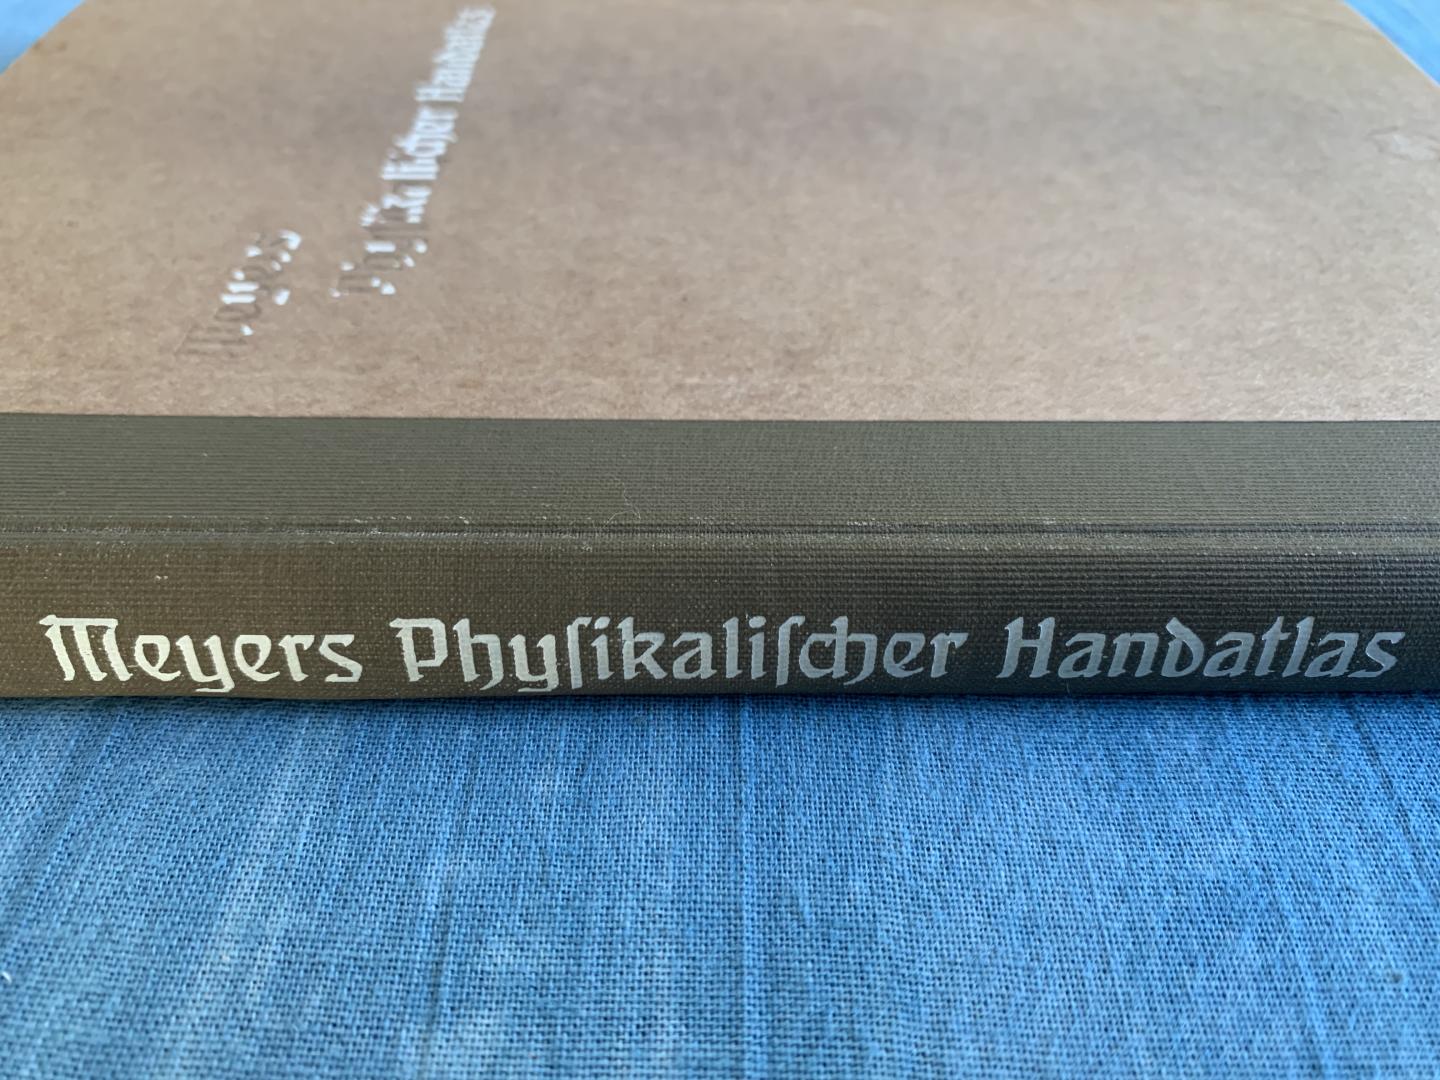 Meyer - Meyers Psysikalischer Handatlas. 51 karten zur Ozeanopraphie, Morphologie, Geologie, Klimatologie, Pflanzen- und Tiergeographie und Völkerkunde.